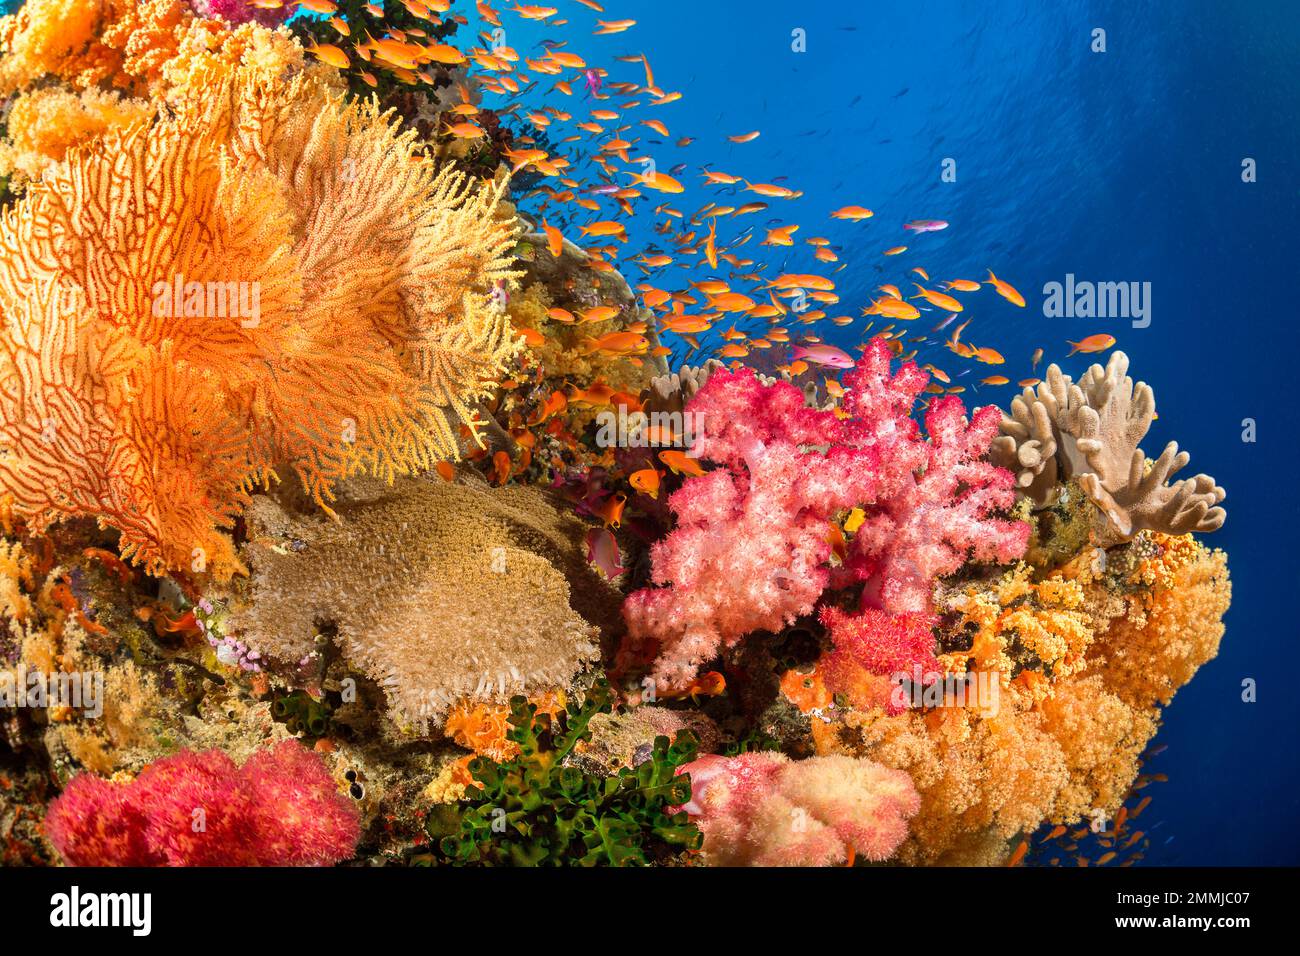 Alcyonarische und gorgonische Korallen mit schülenden Anthien dominieren diese fidschianische Riffszene. Stockfoto